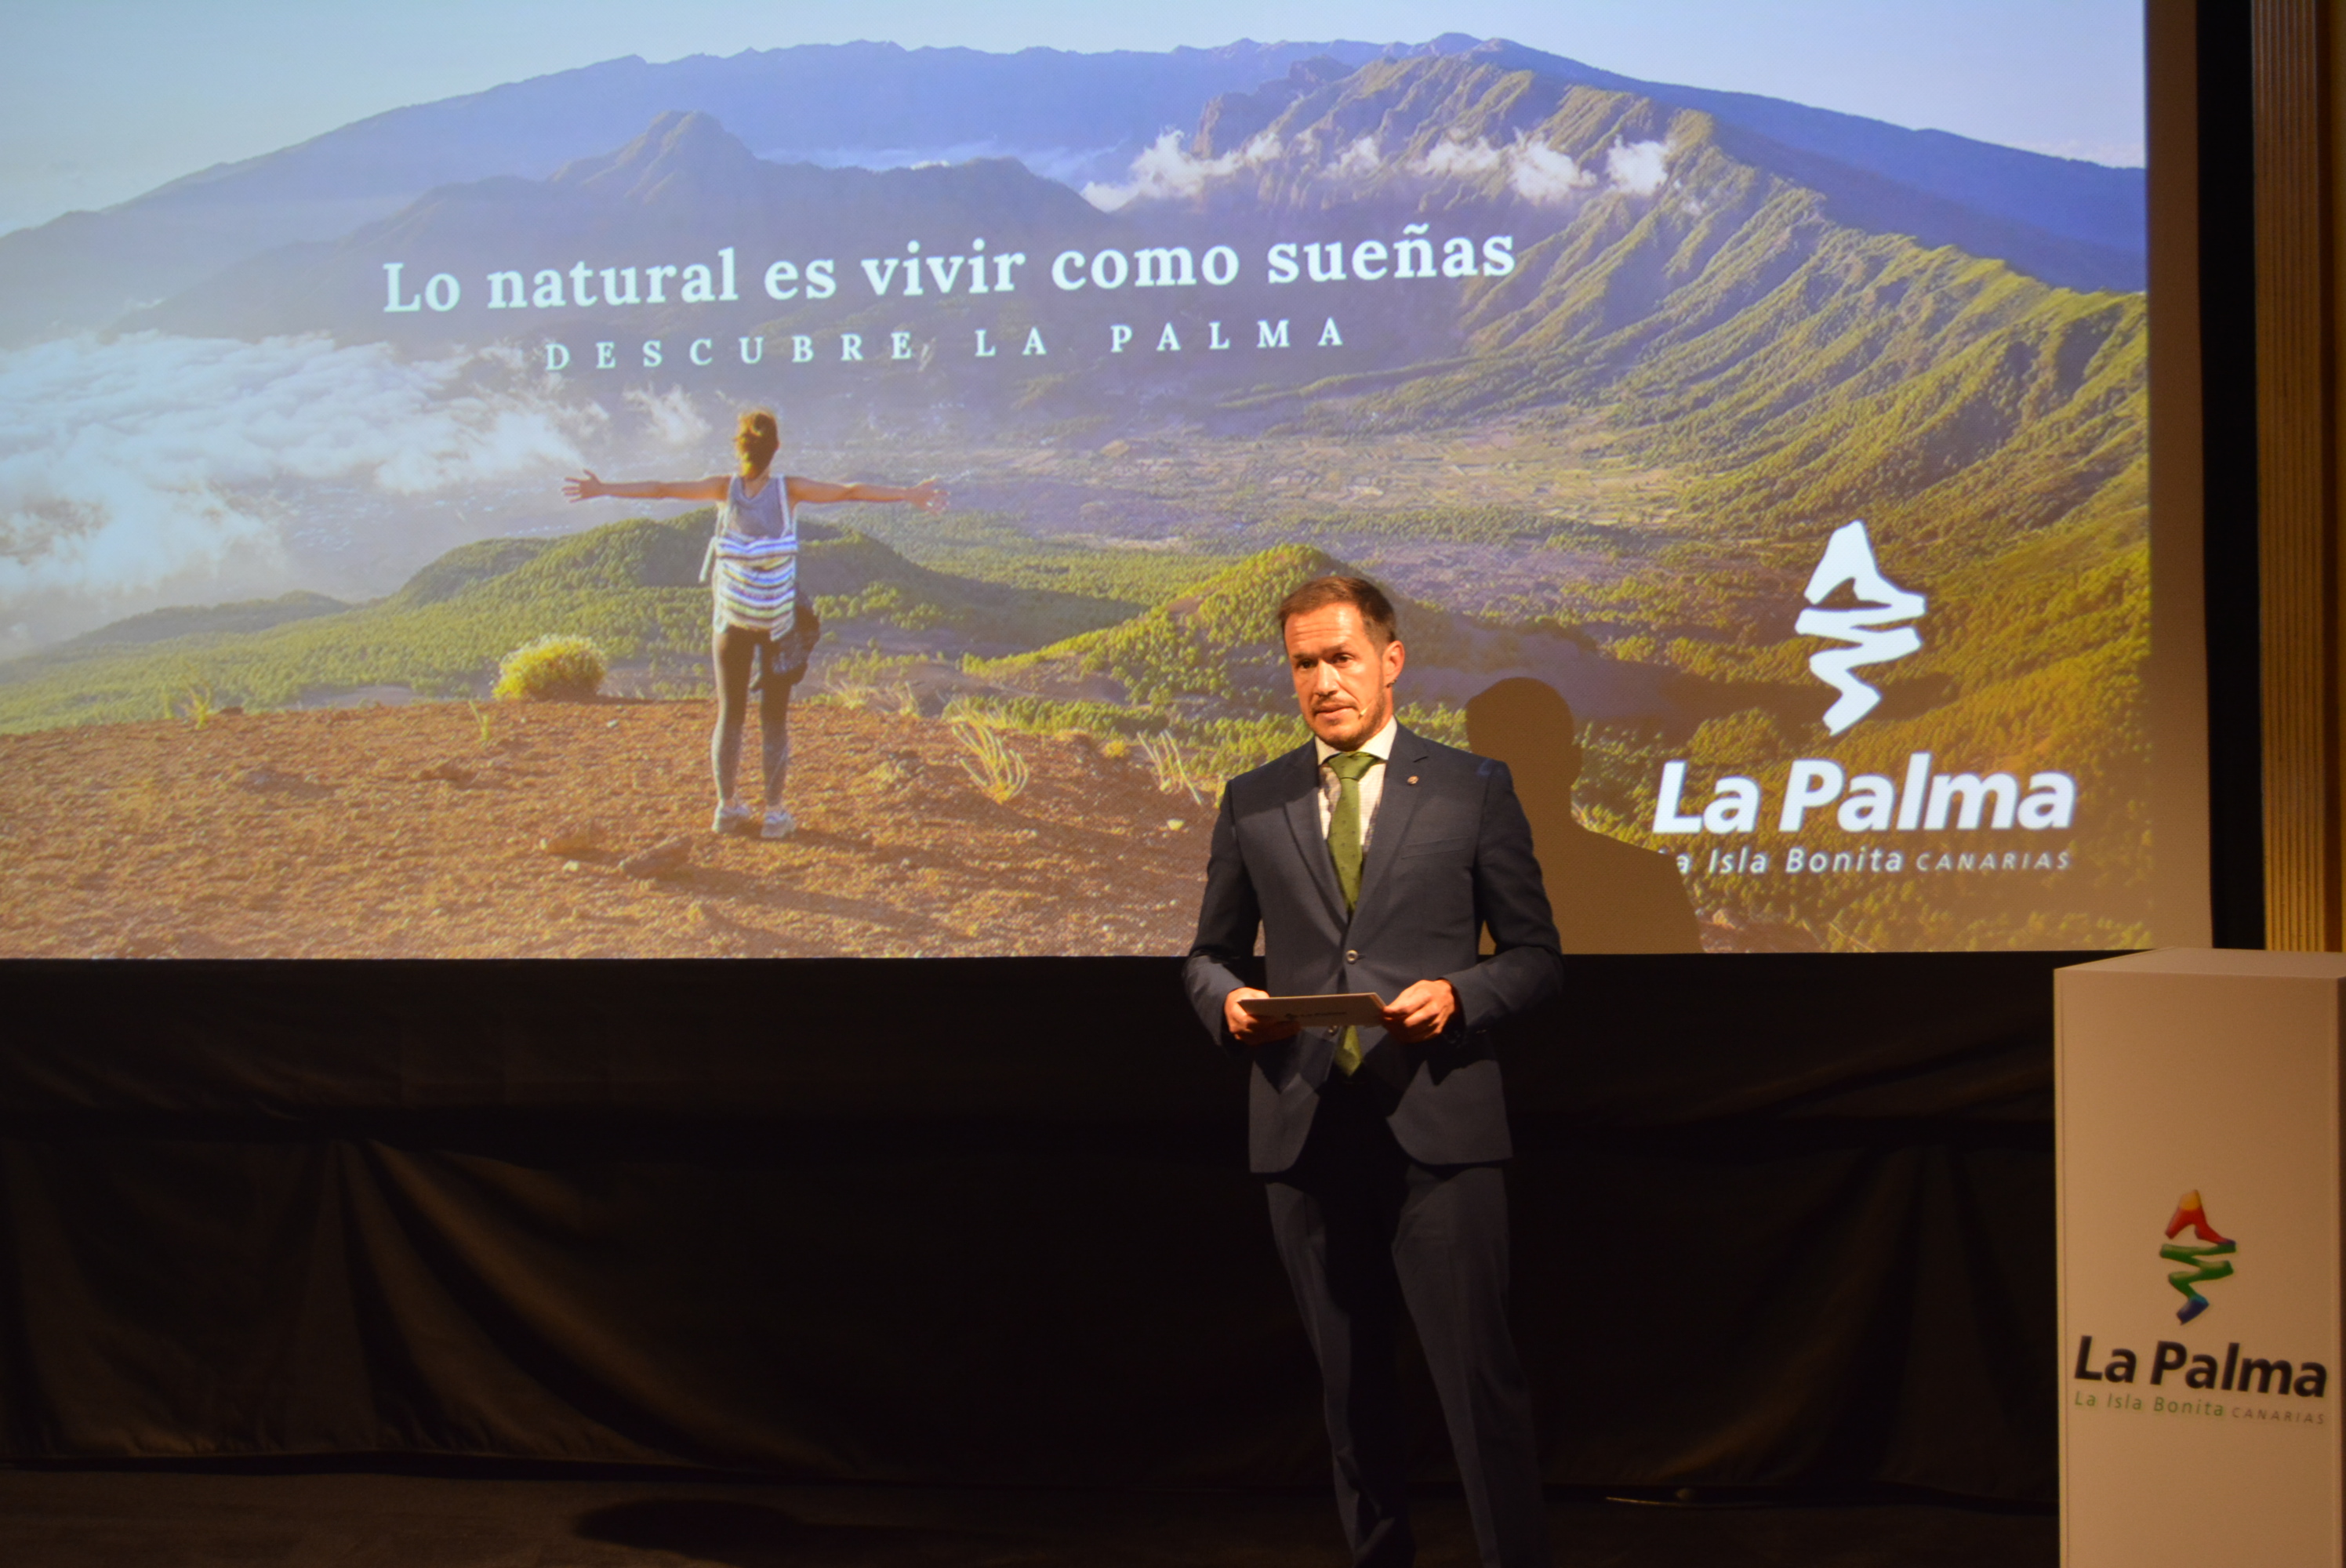 Campaña de turismo de La Palma "Lo natural es vivir como sueñas" / CanariasNoticias.es